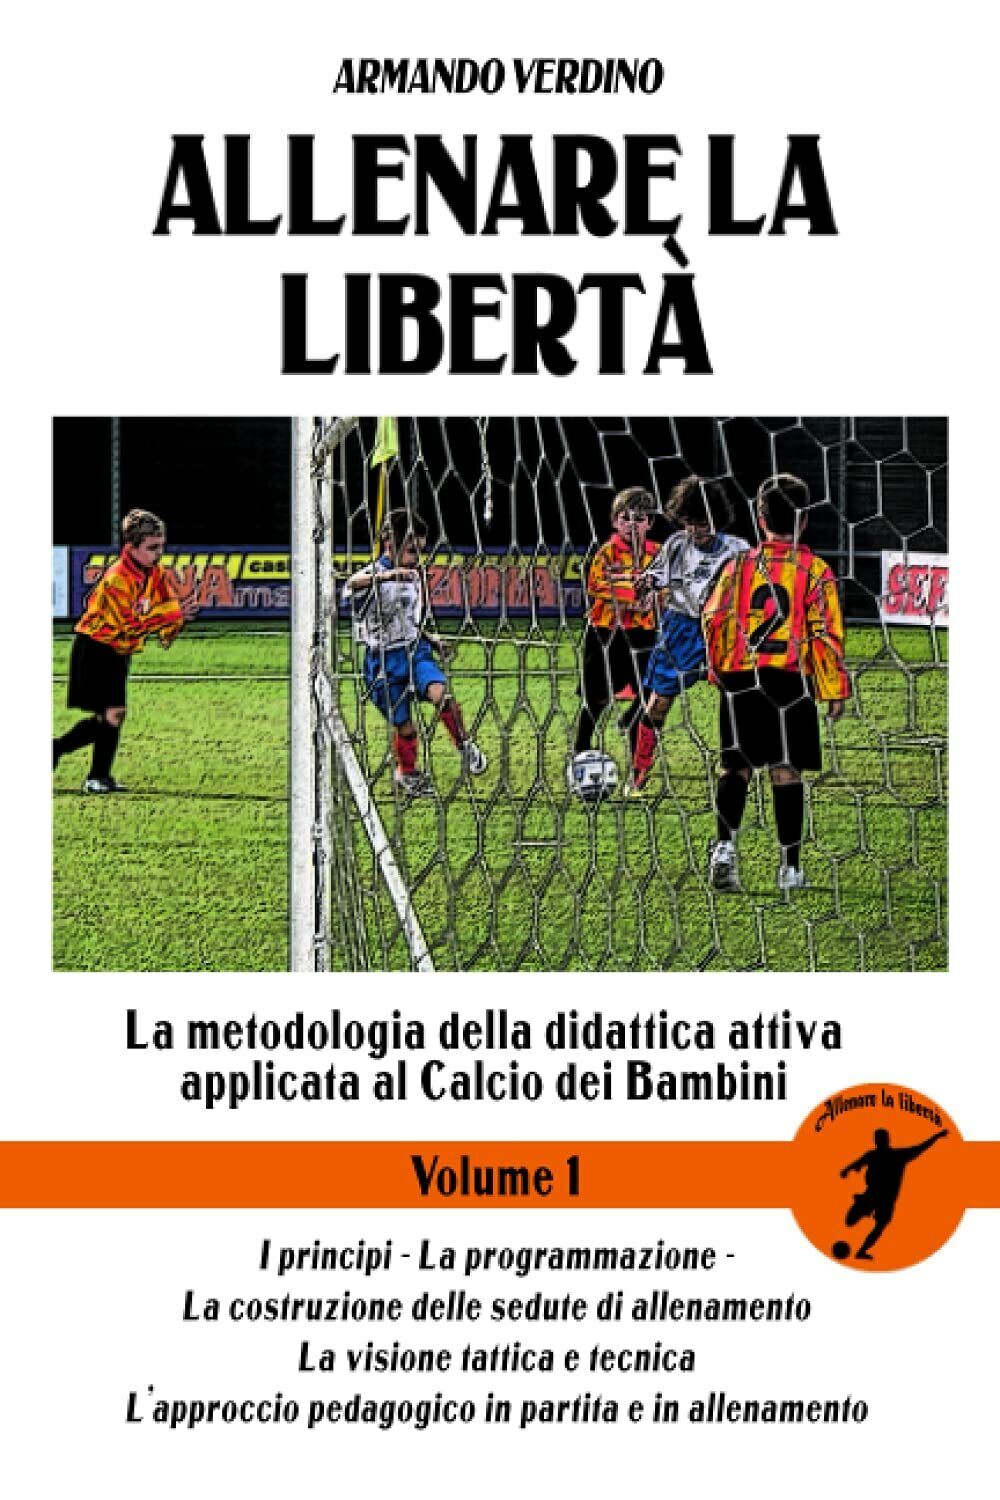 Allenare La Liberta - Volume 1 - Armando Verdino - Independently Published,2021